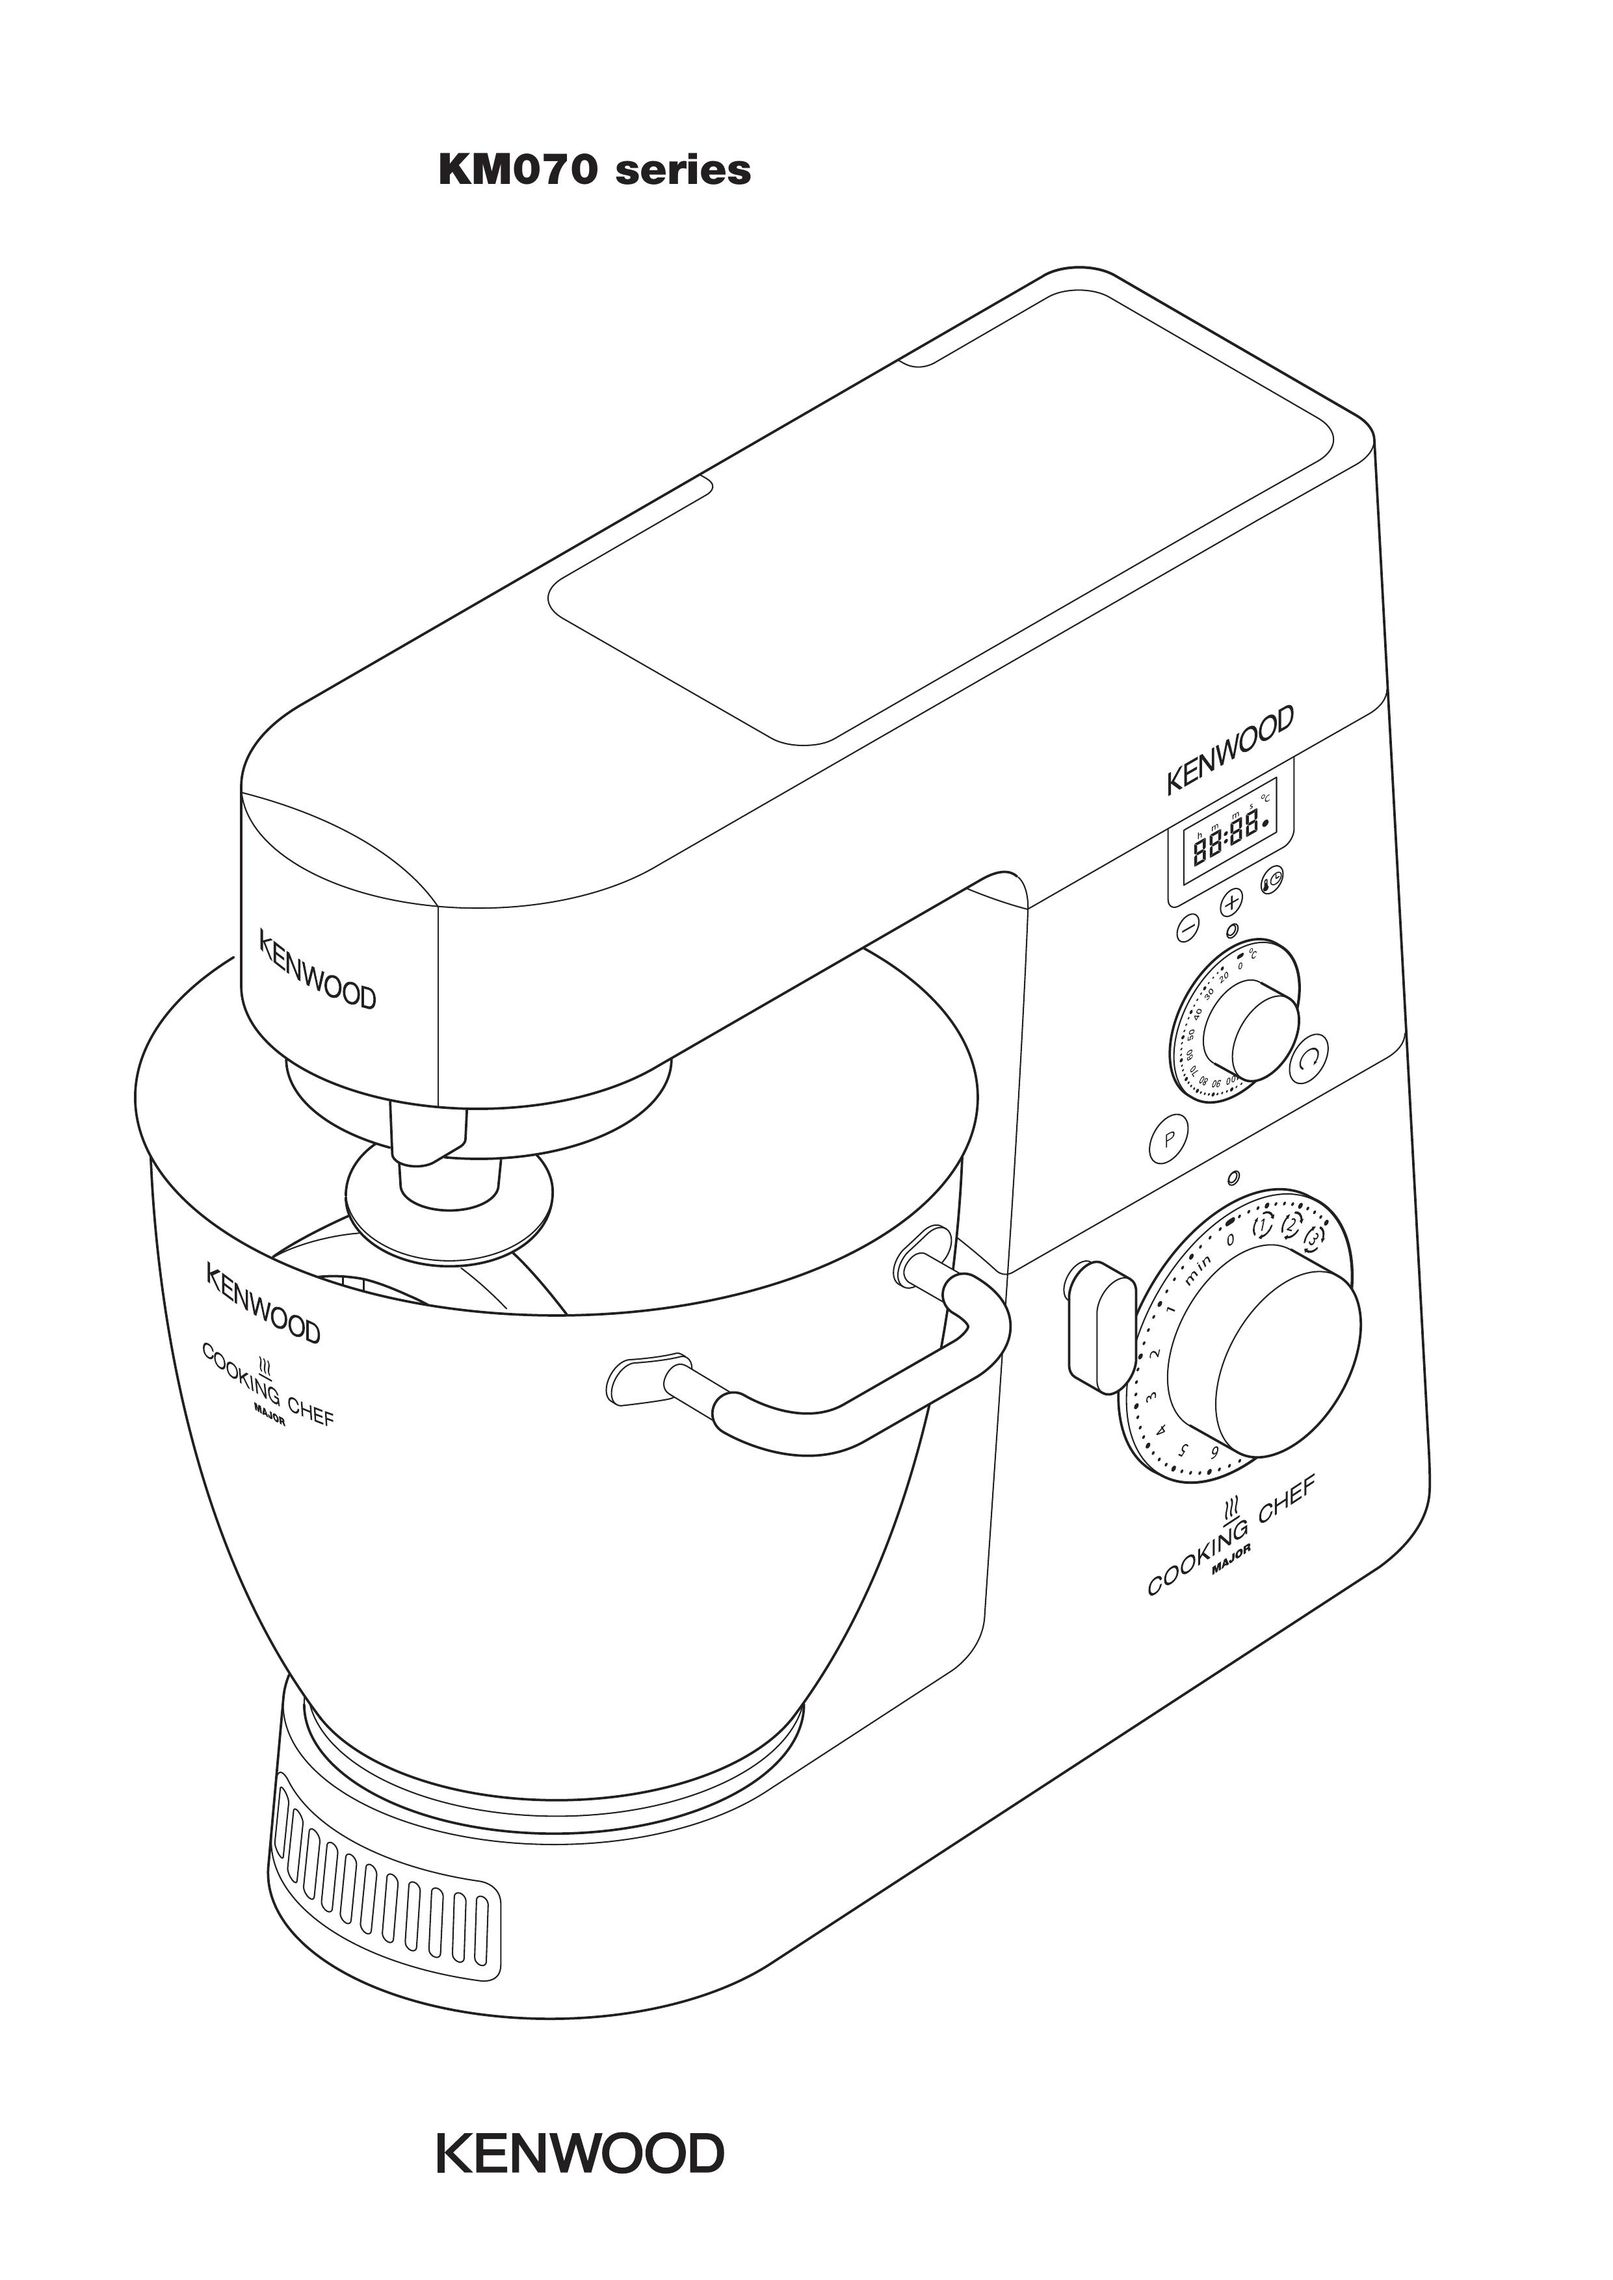 Kenwood KM070 series Mixer User Manual